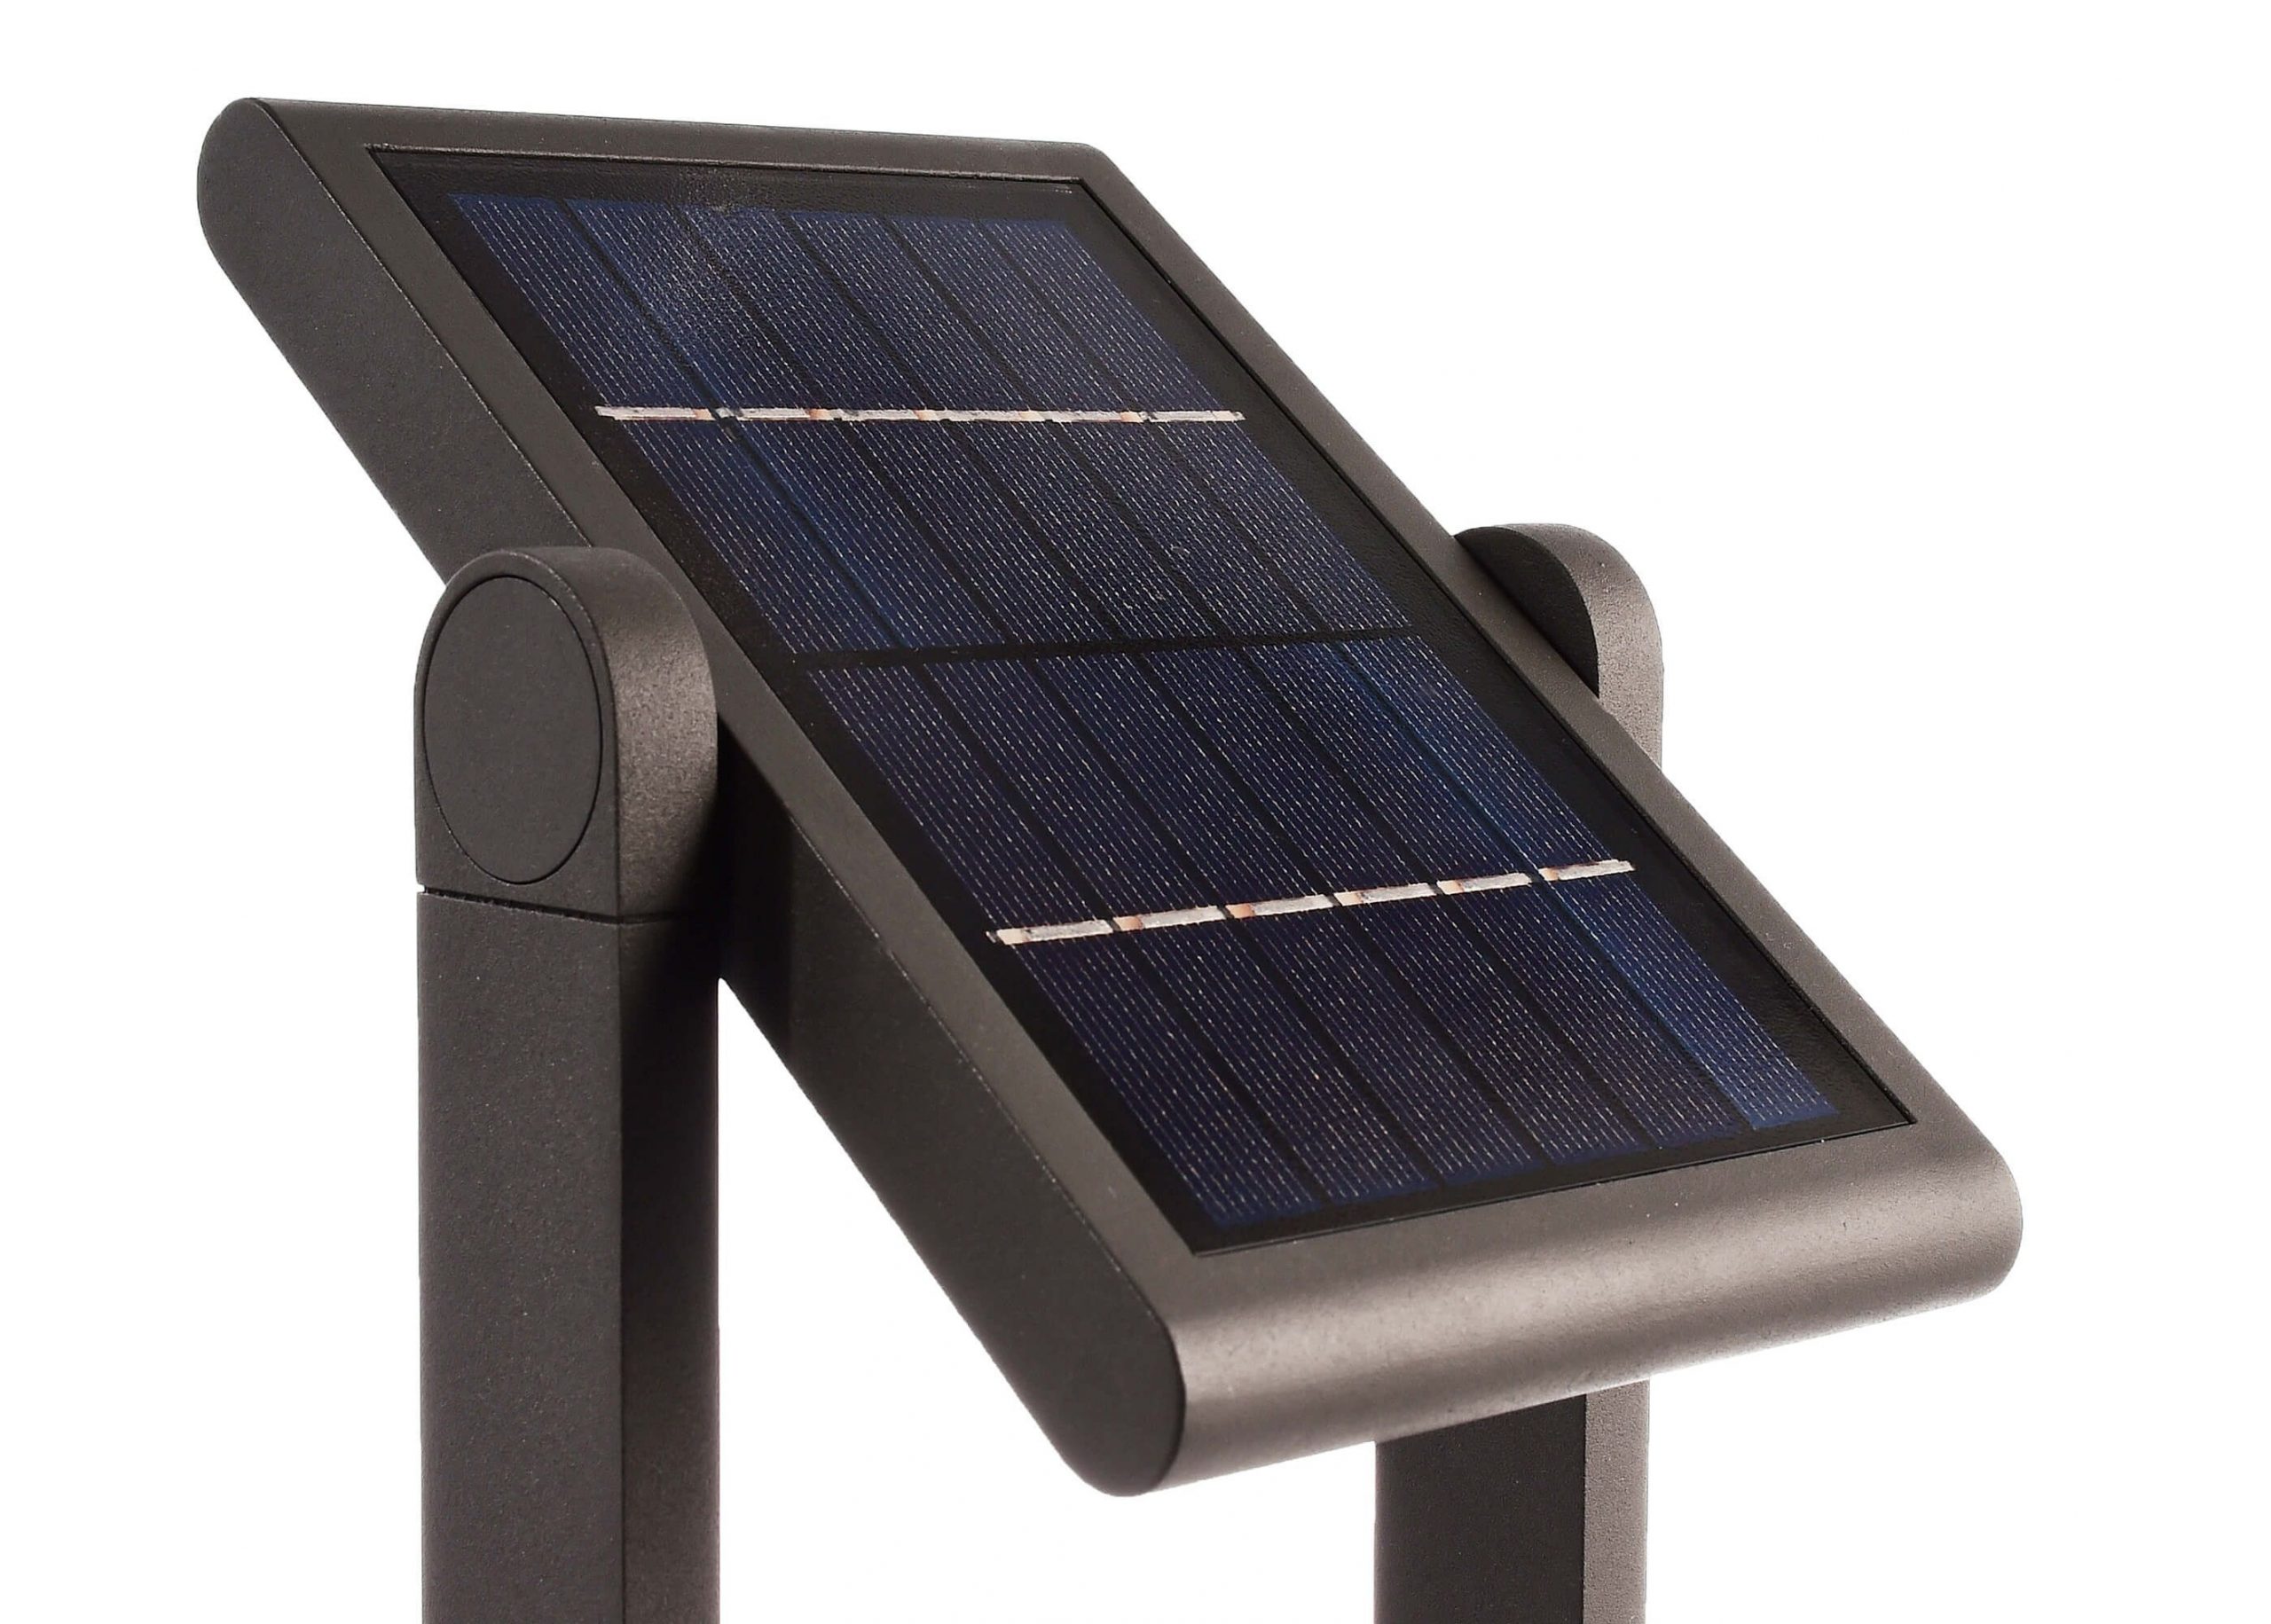 gezond verstand attribuut belasting Deko-Light Premium Solar led buitenverlichting sensor - Schemerschakelaar  en Bewegingsmelder - Staande buitenlamp - verlichting zonne energie buiten  - Zoomoi